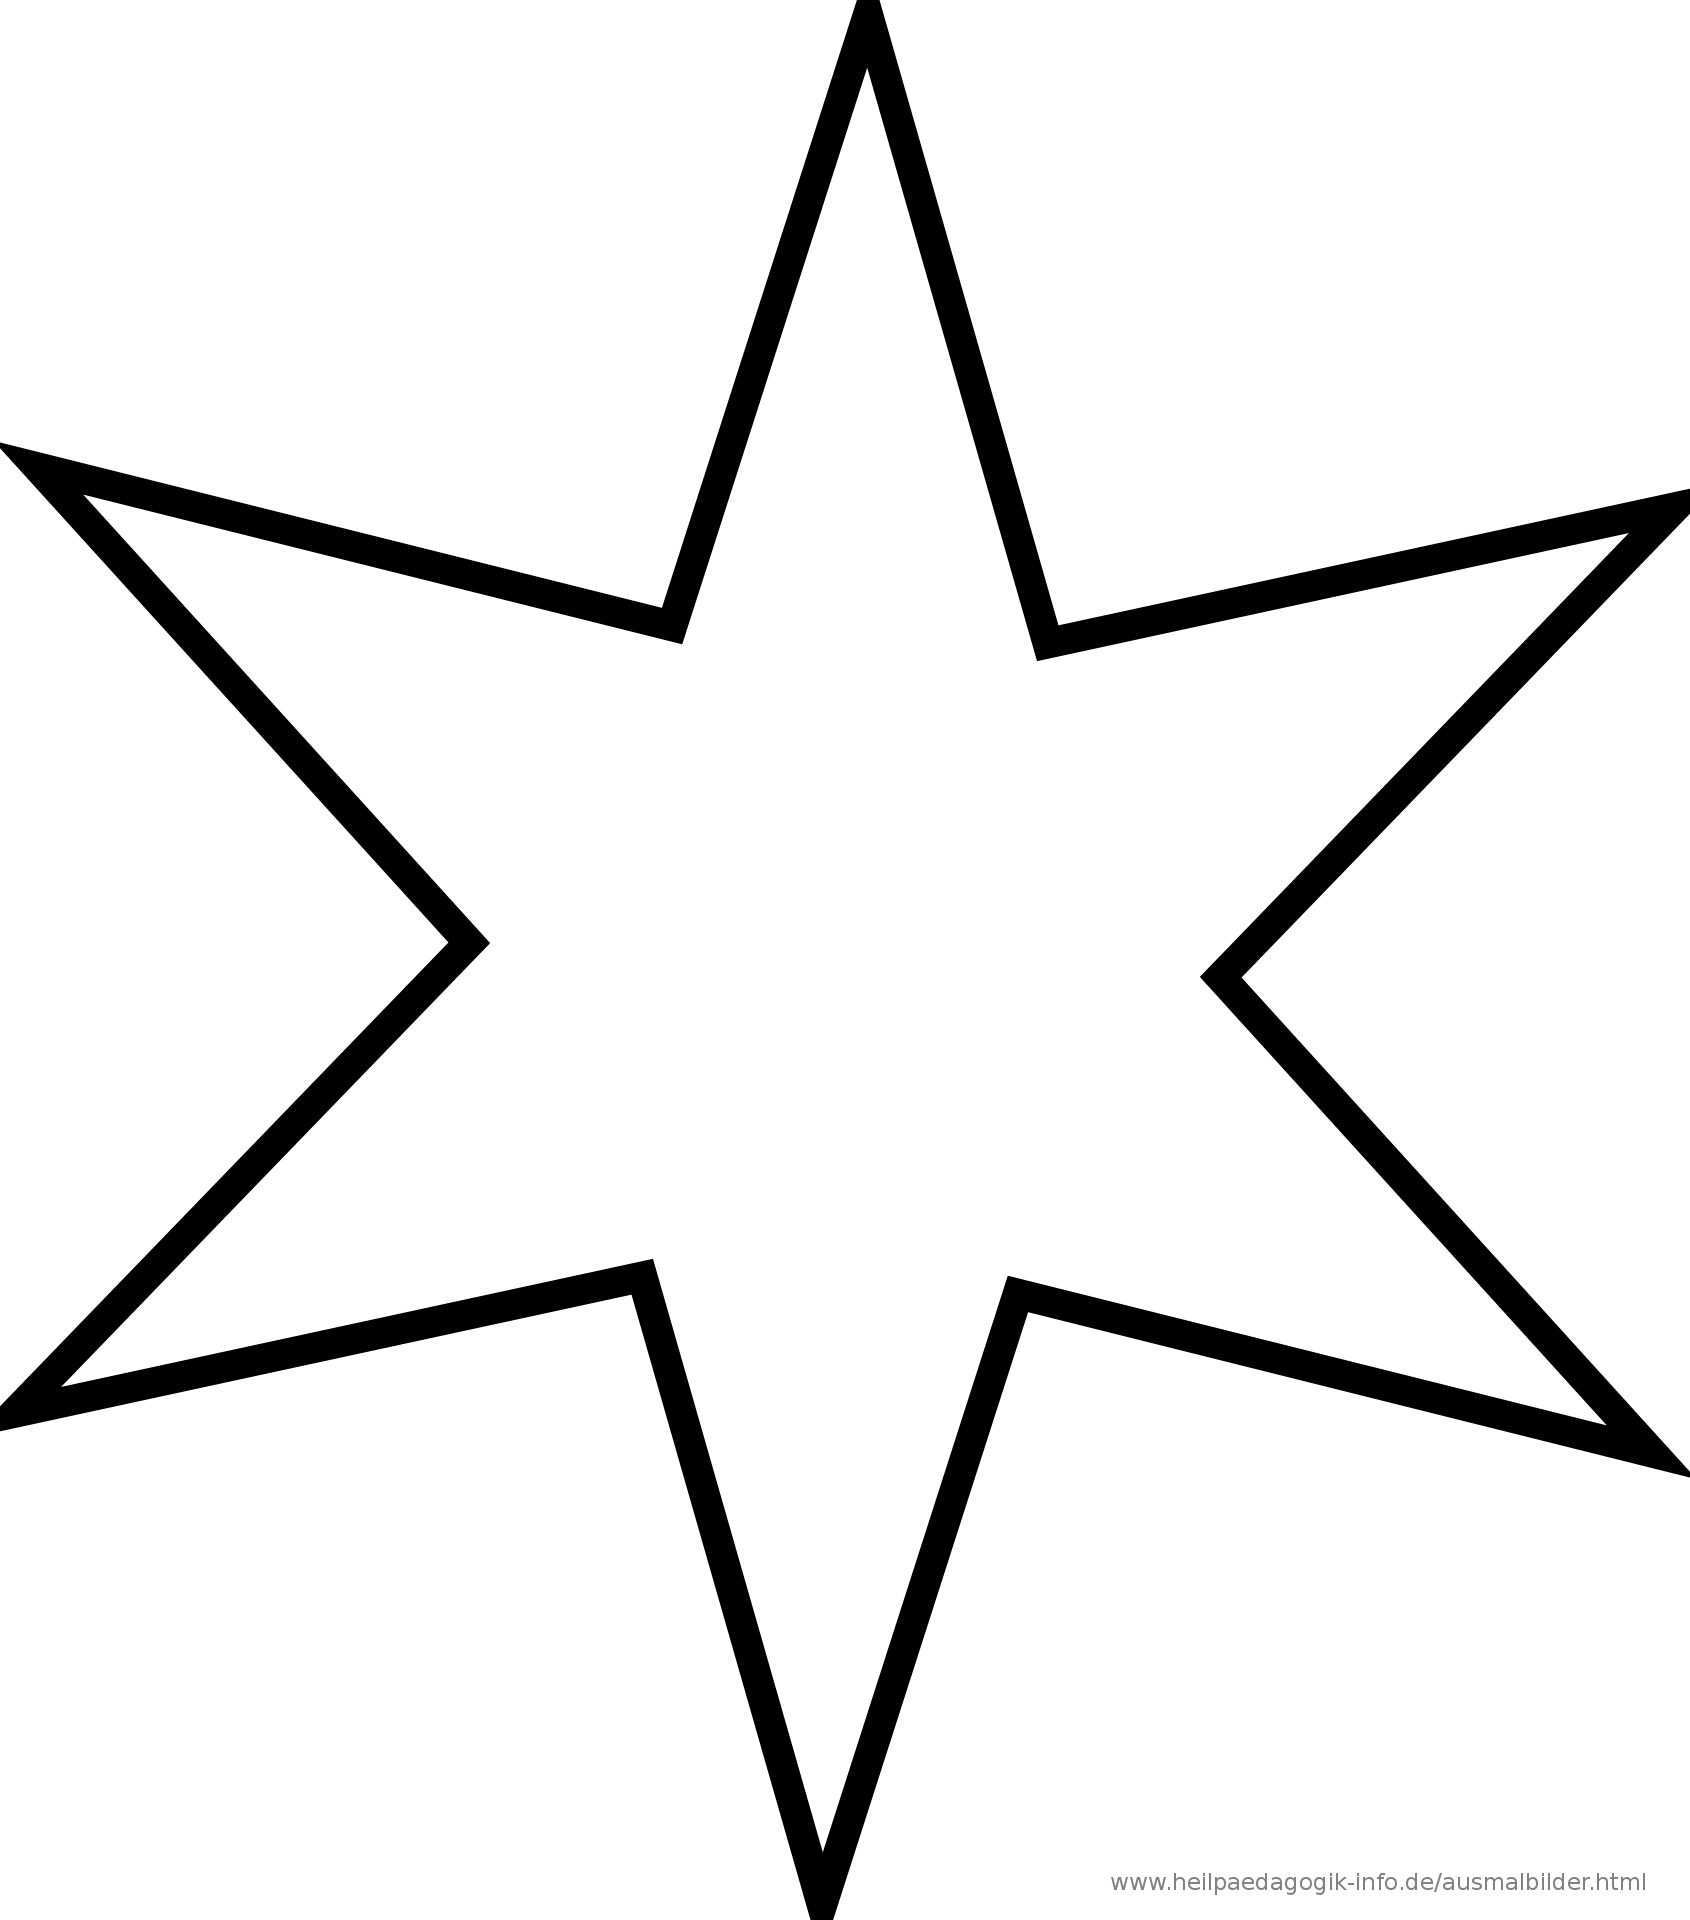 Ausmalbilder Zum Ausdrucken Sterne Modern Stern Vorlage Ausschneiden Bestimmt Fur Stern Malvorlage Ausdruc Sterne Zum Ausdrucken Malvorlage Stern Vorlage Stern